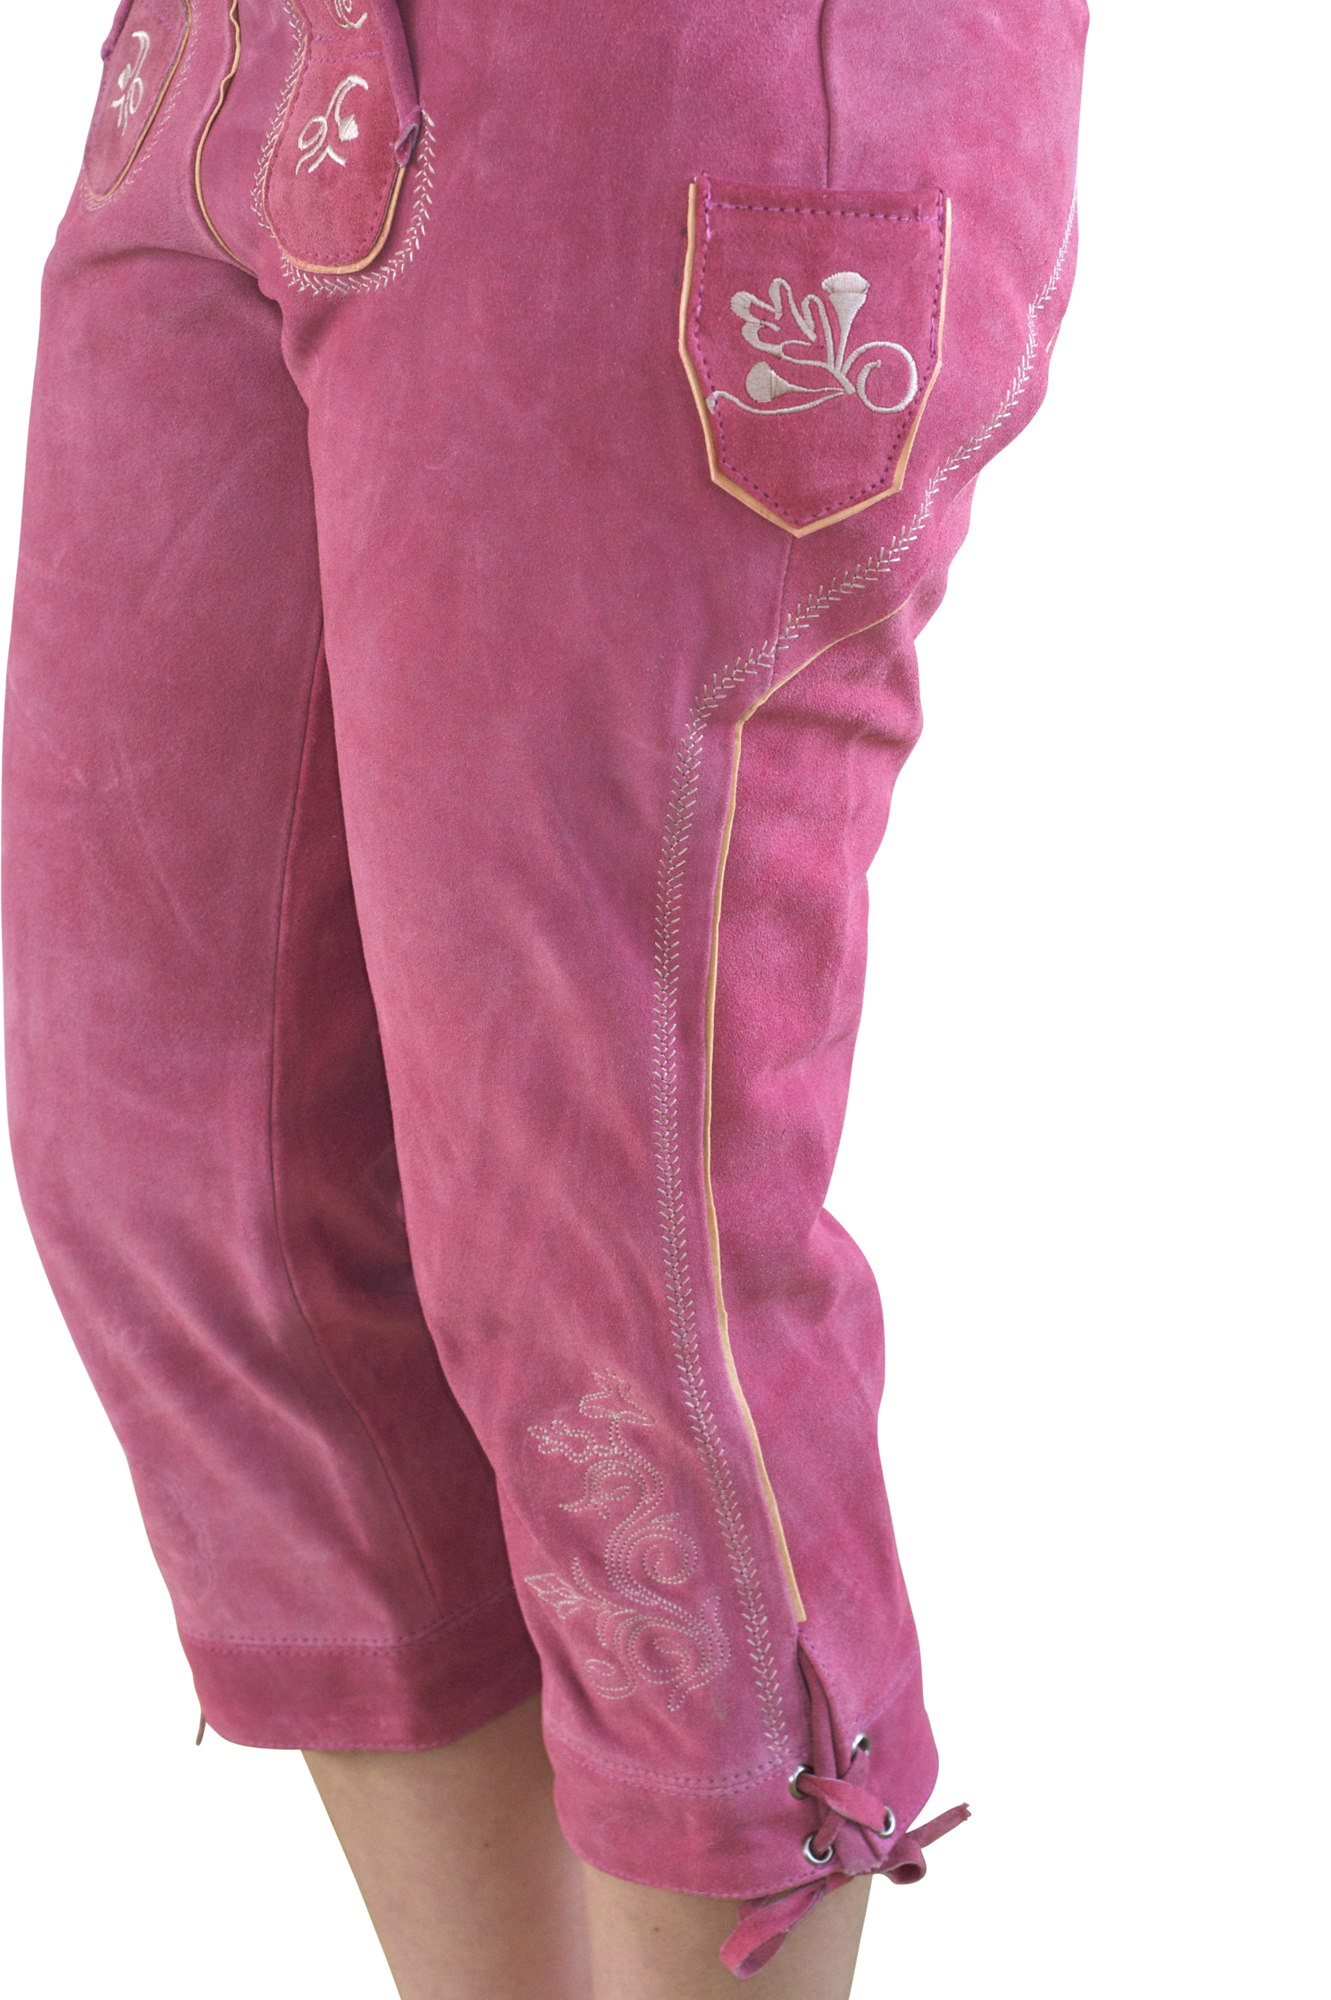 Damen Trachtenlederhose Kniebundhose pink 